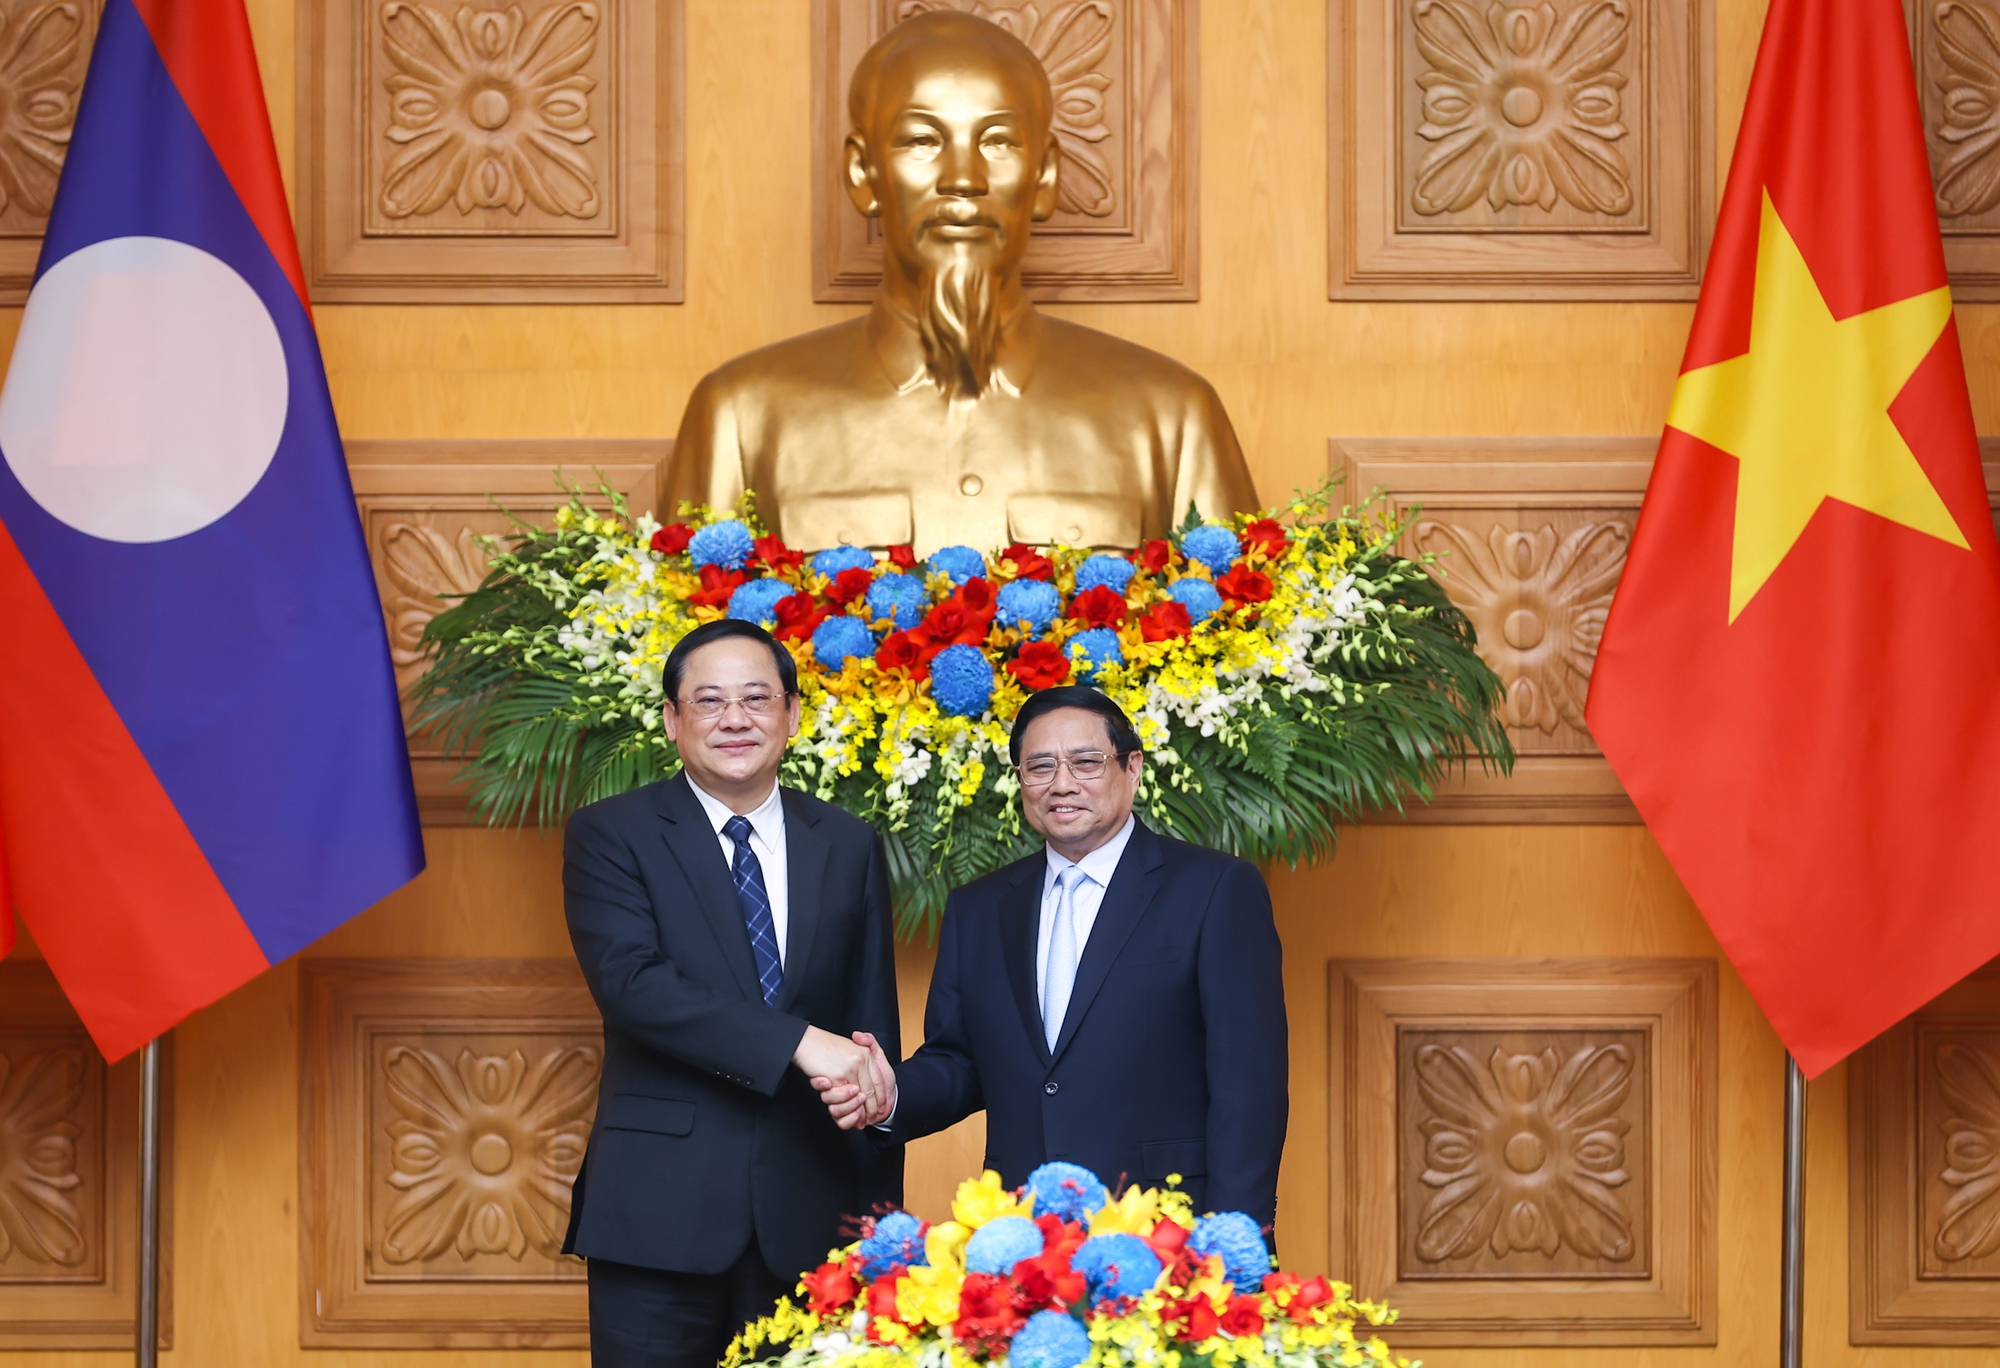 Thủ tướng Phạm Minh Chính nhiệt liệt chào mừng Thủ tướng Lào Sonexay Siphandon lần đầu tiên sang thăm chính thức Việt Nam trên cương vị mới - Ảnh: VGP/Nhật Bắc